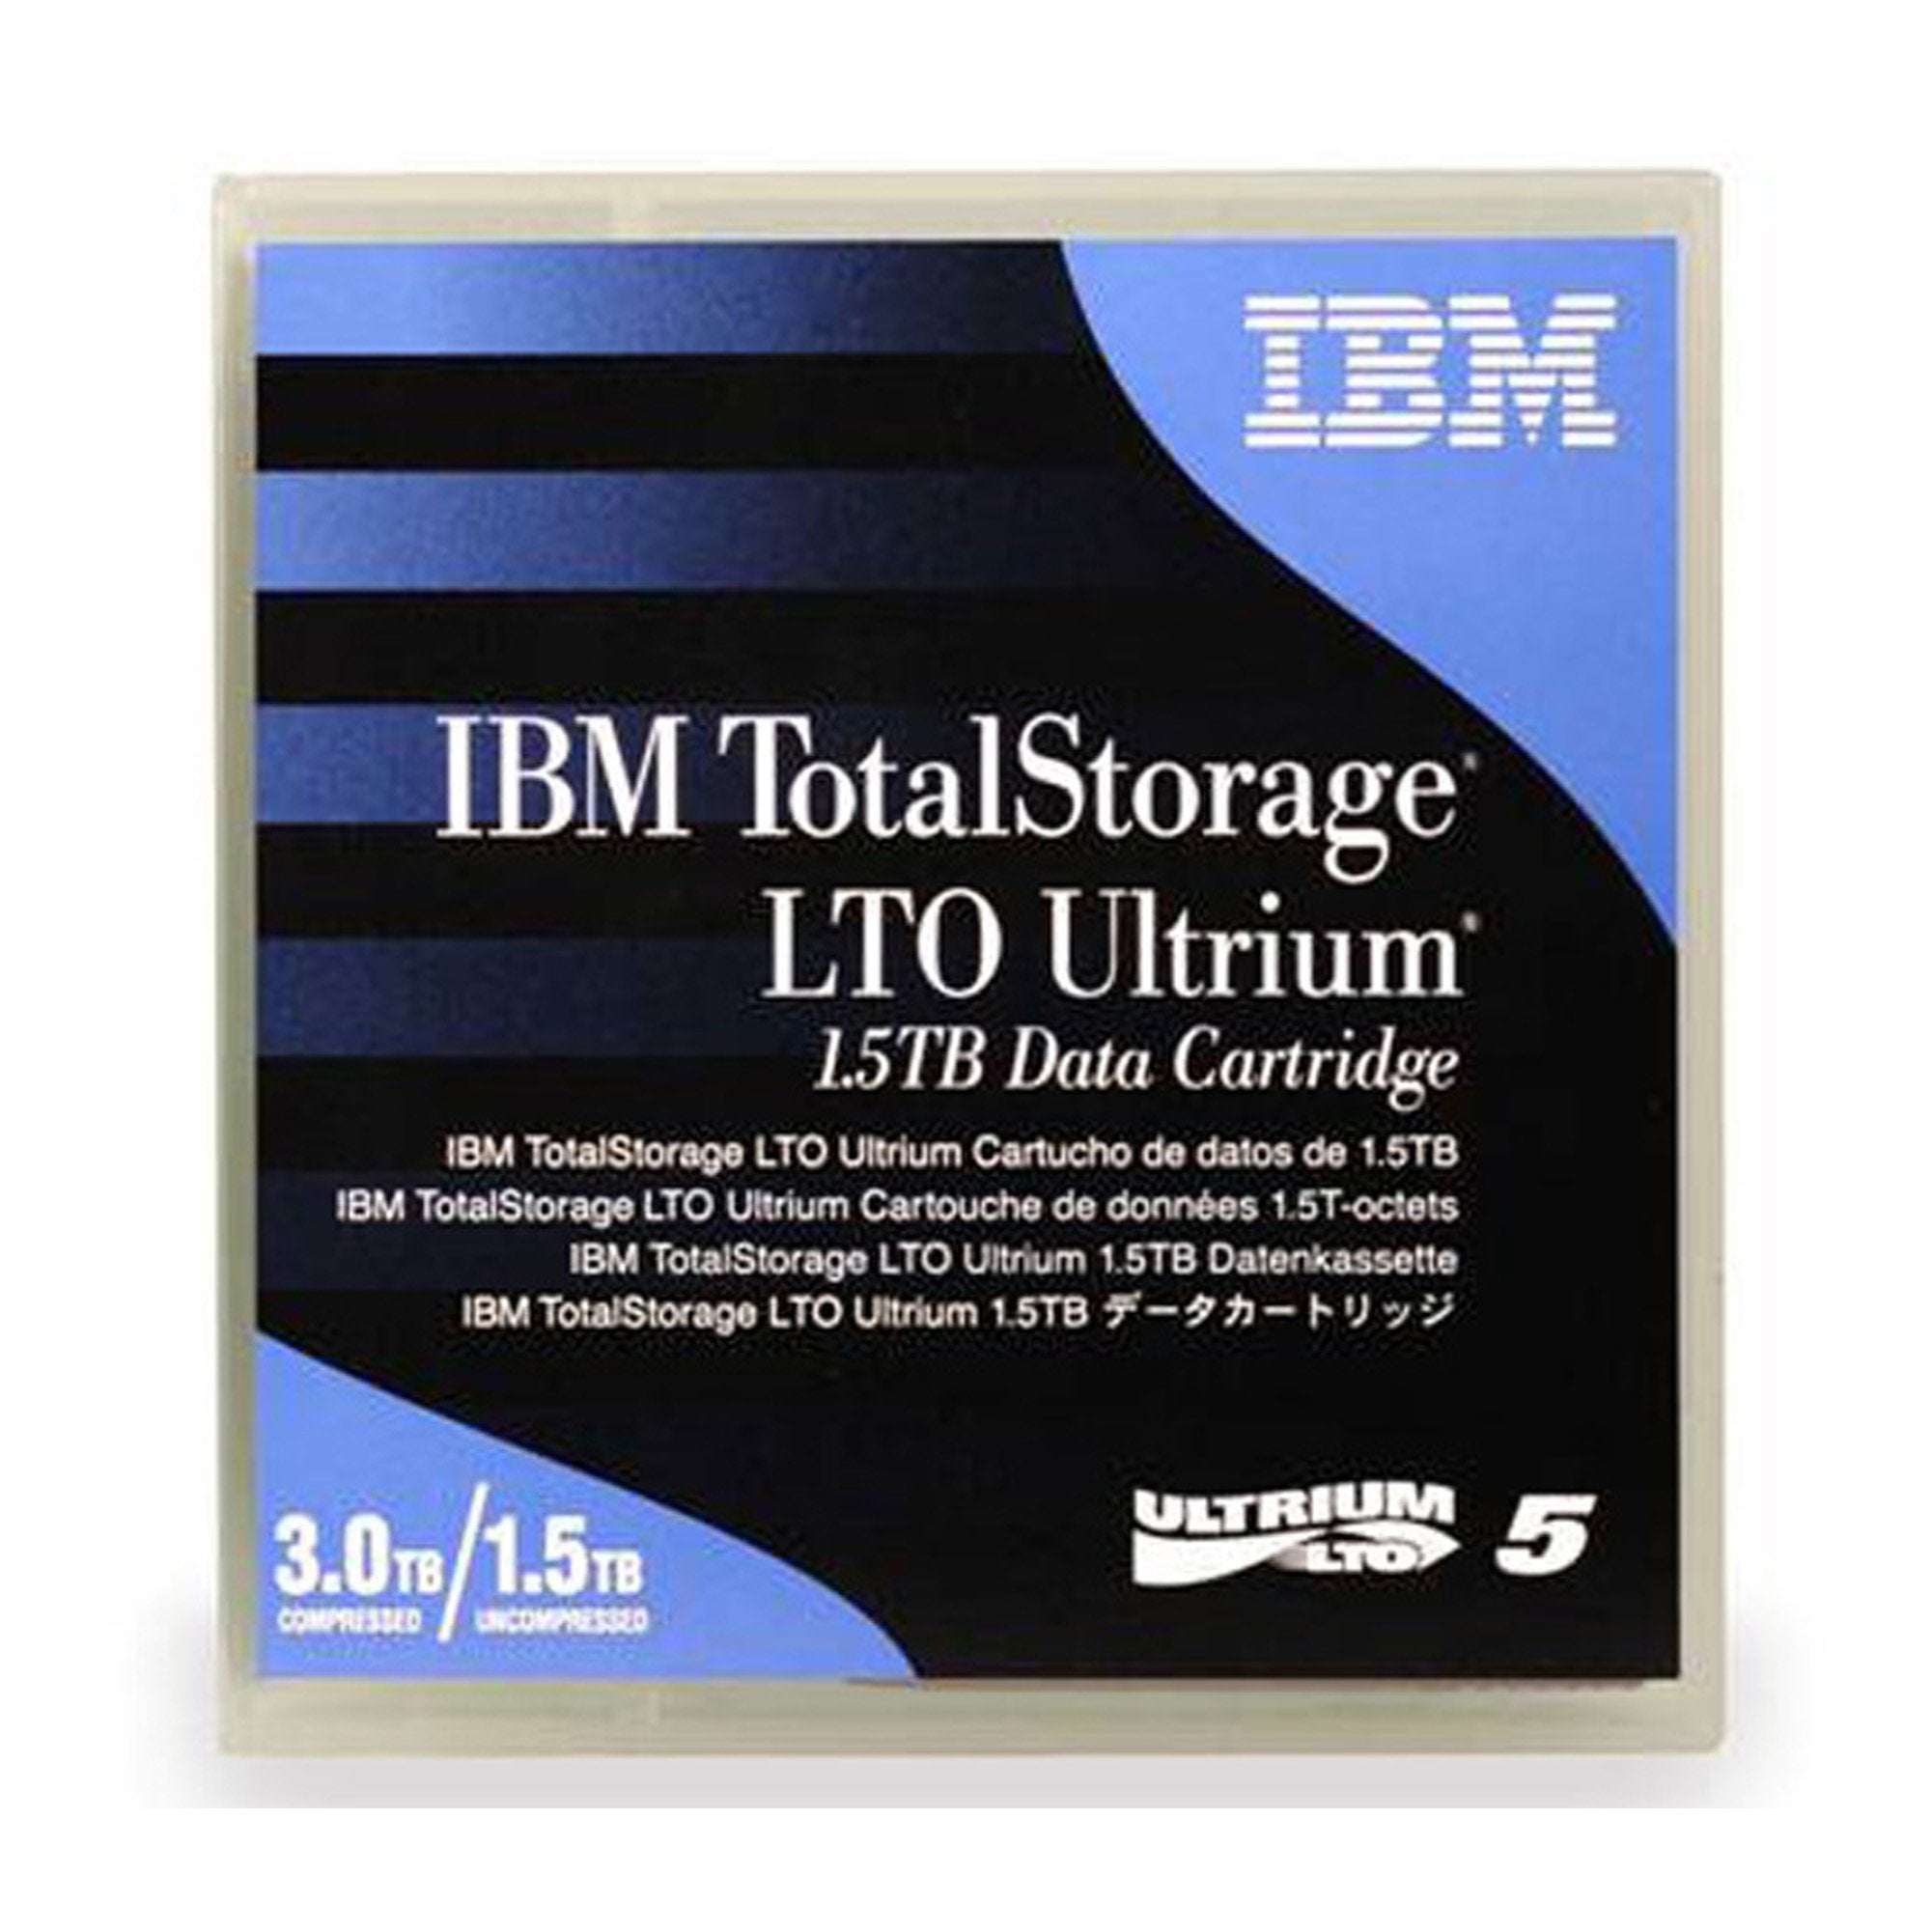 ibm-datacartridge-lto-5-ultrium-5-1-5tb